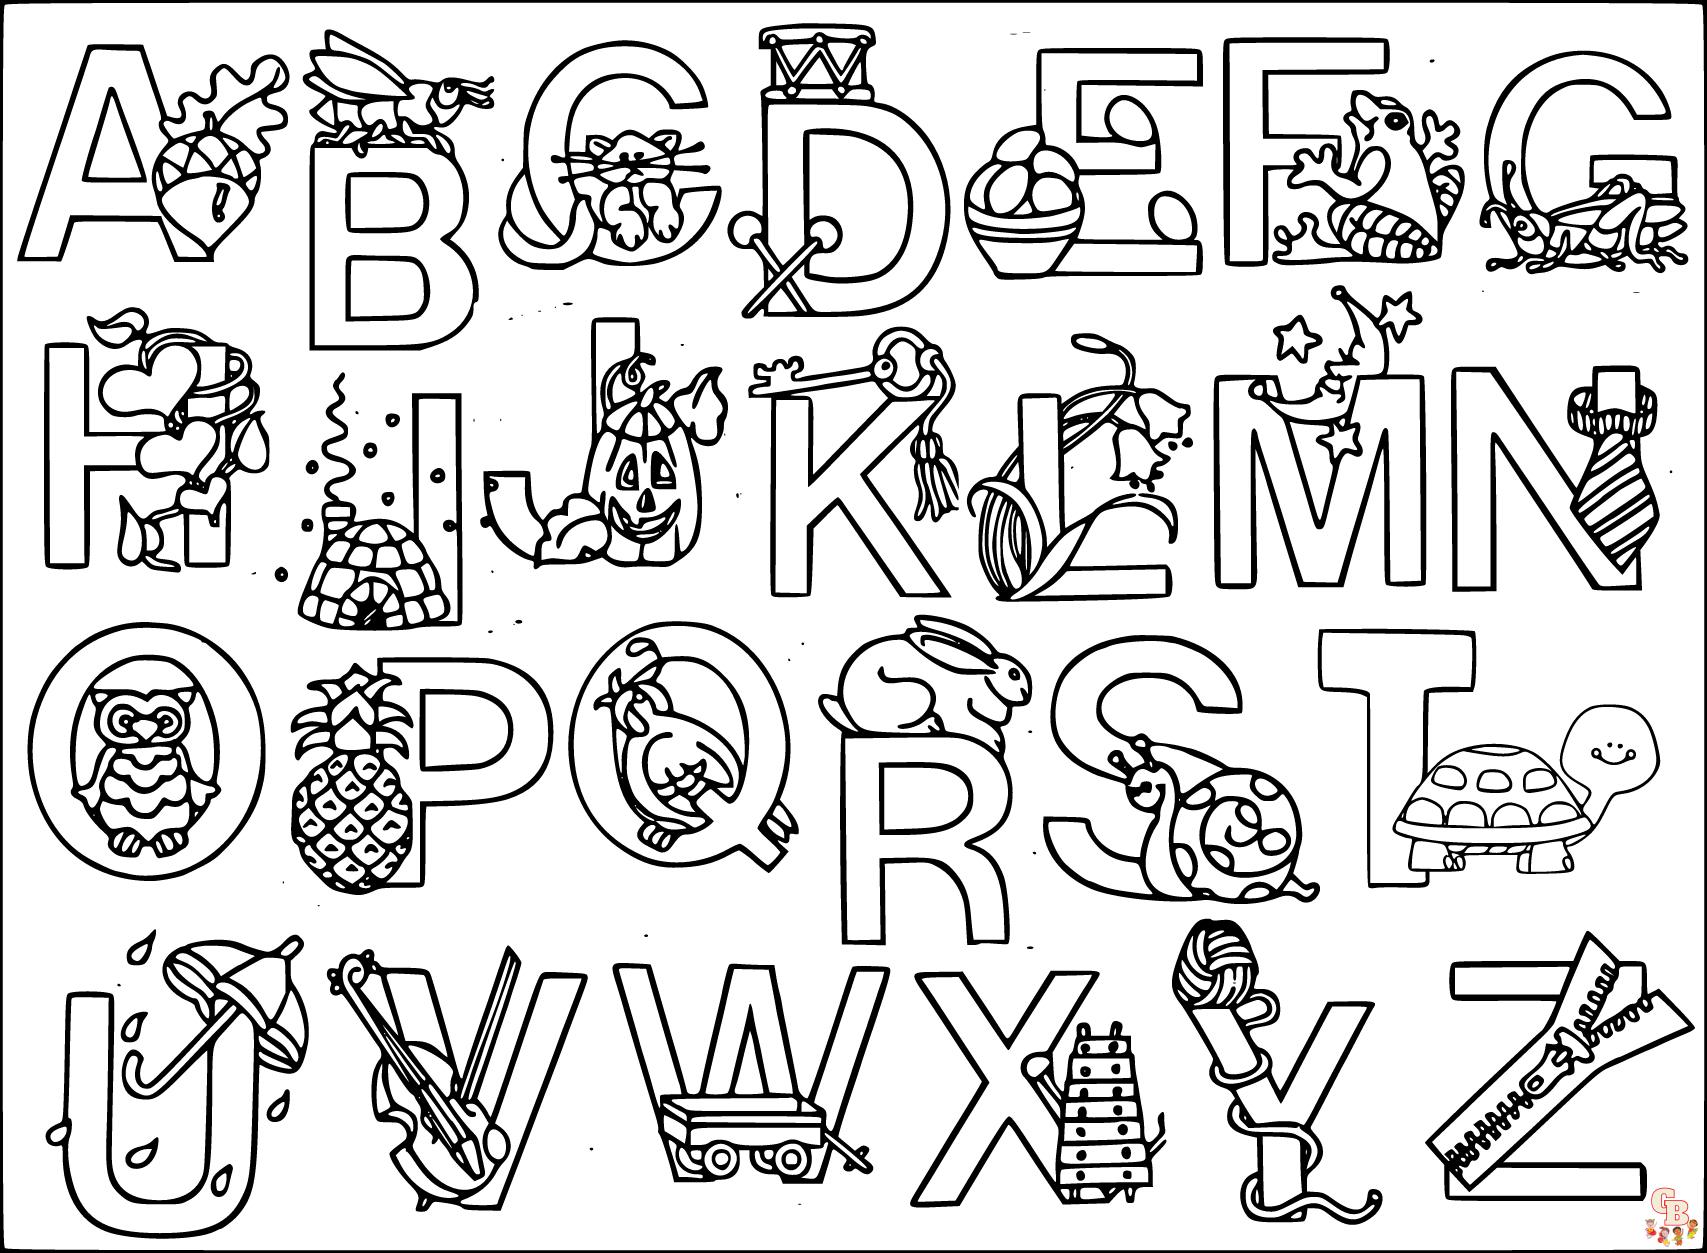 Alphabet colors. Азбука-раскраска. Раскраска алфавит. Азбука раскраска для детей. Английские буквы для раскрашивания.